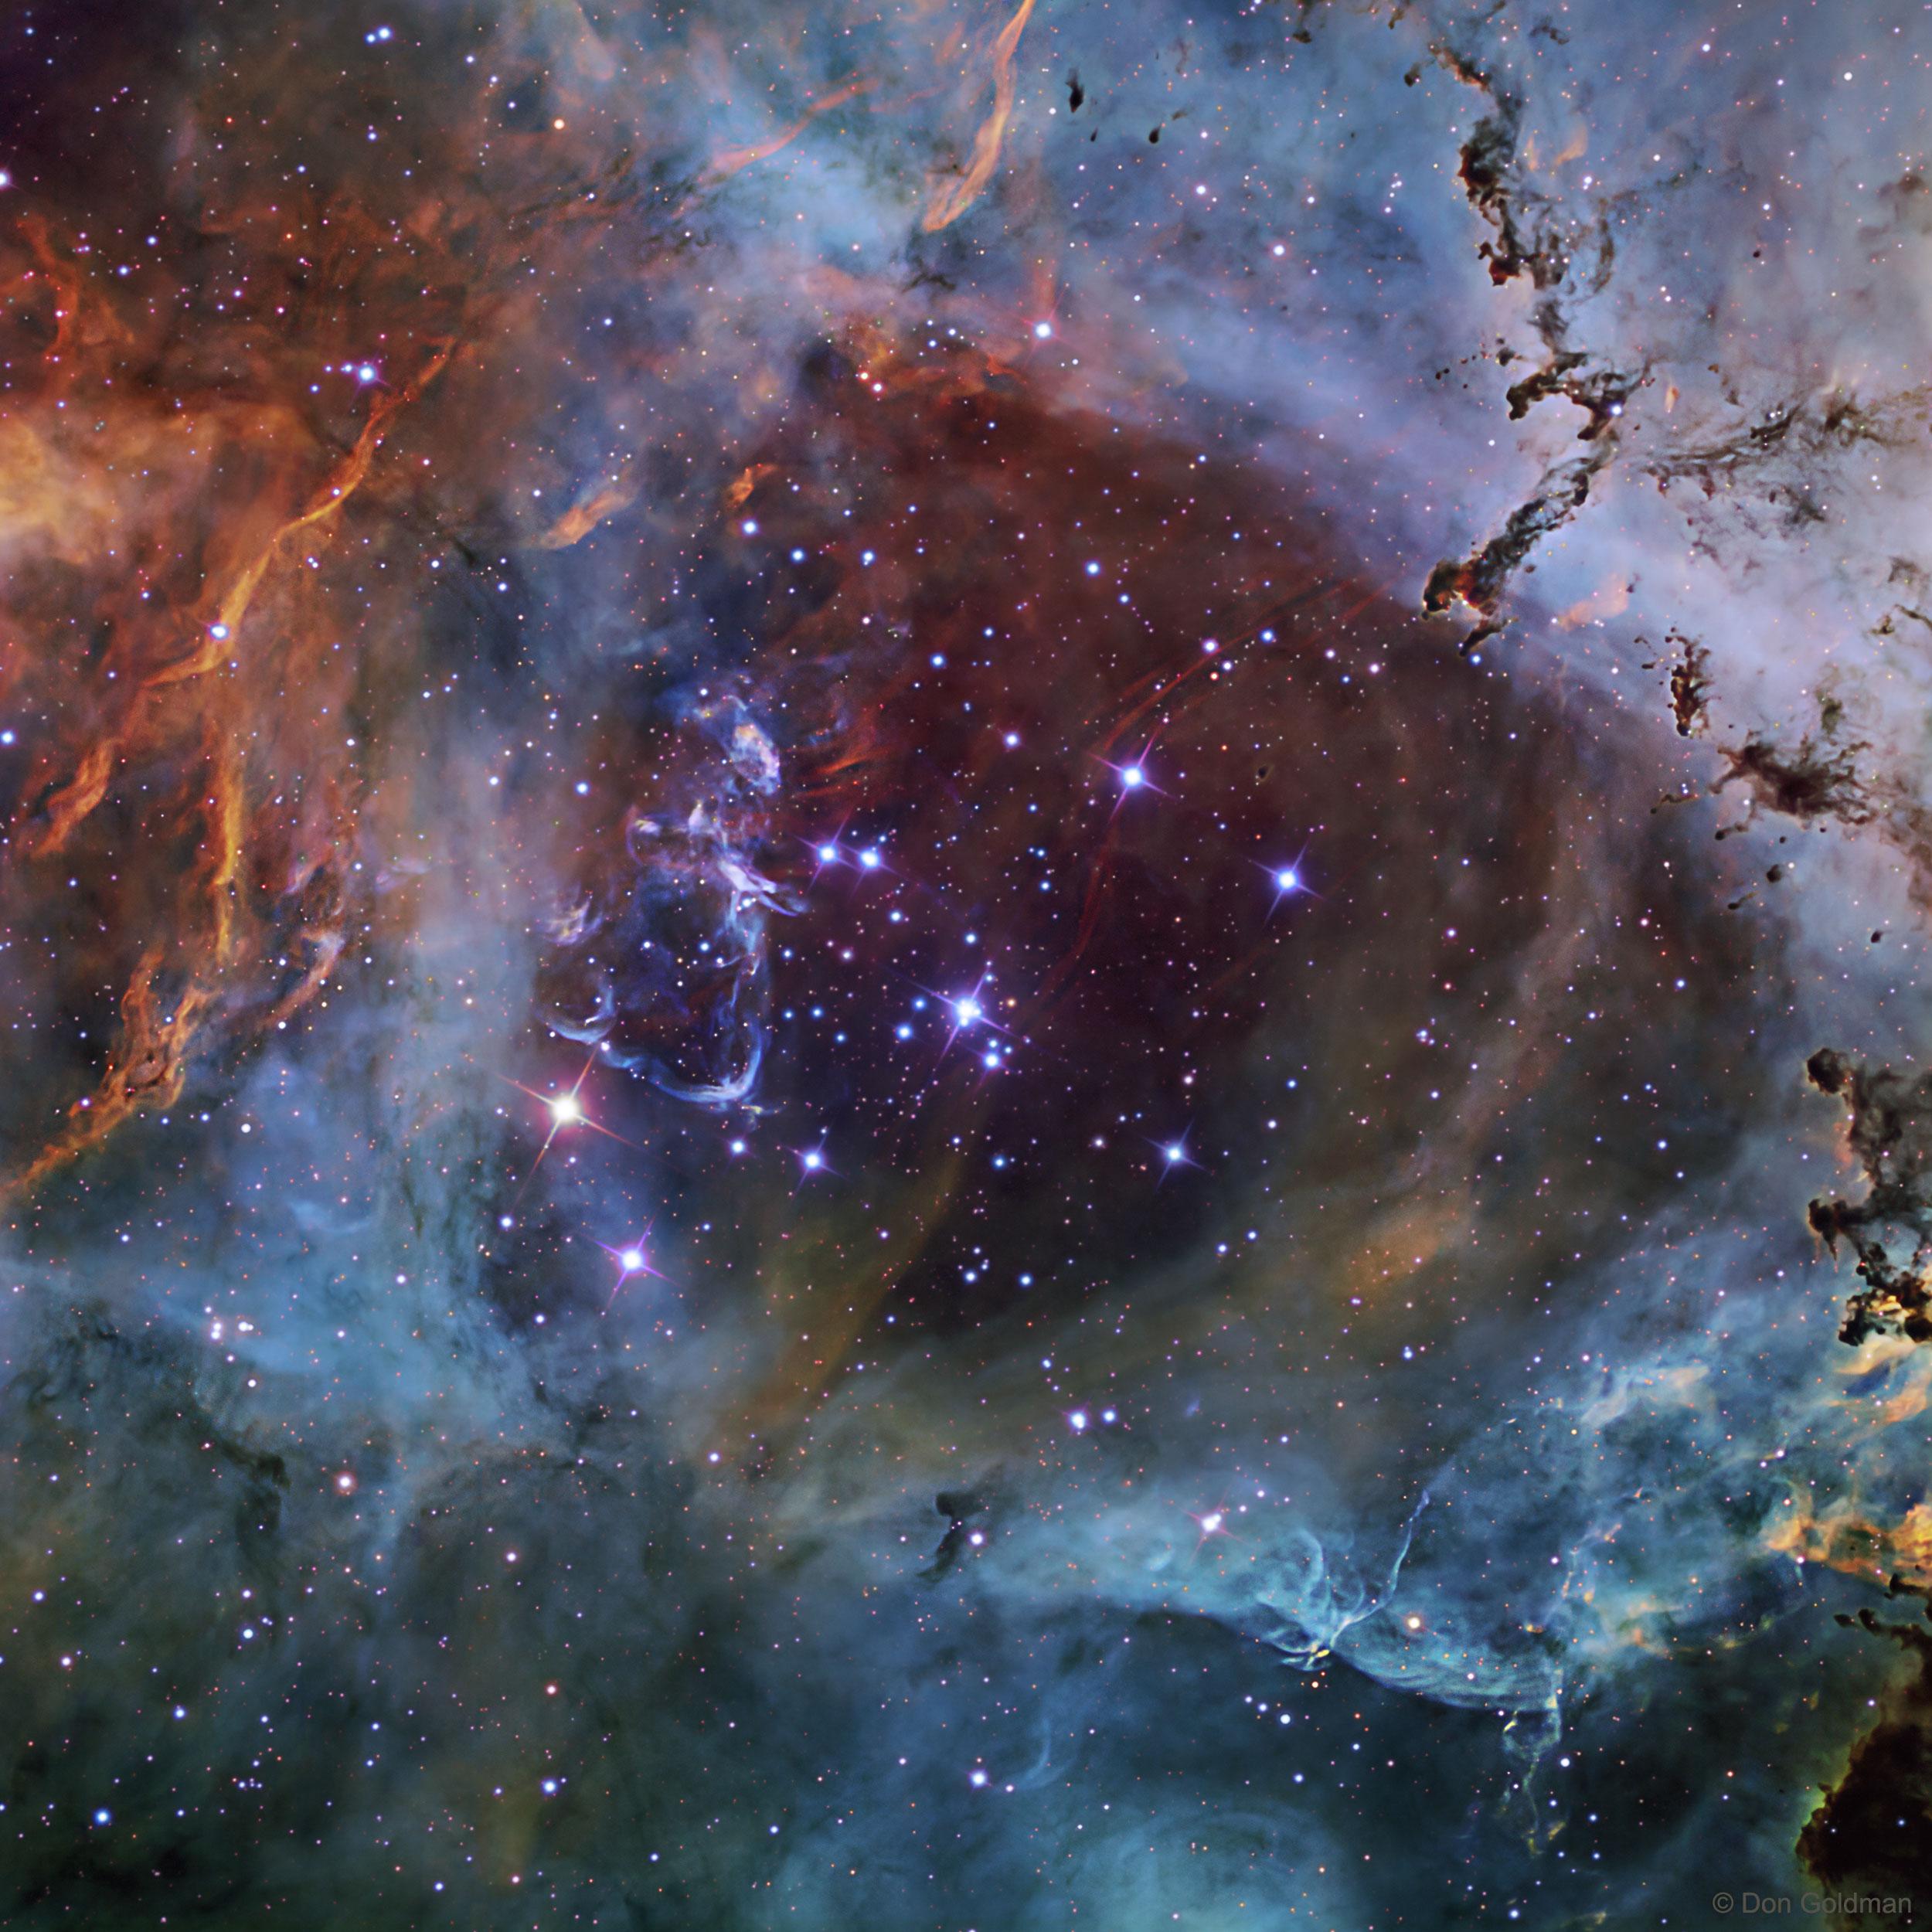 صورة تفصيليّة للعنقود النجمي الساطع الذي يقع في قلب سديم الوردة. تظهر الصورة -التي يغطيها عدد هائل من النجوم تتركّز بمعظمها حول المركز- بألوان مُبهجة محدّدة تتراوح بين الأحمر للكبريت والأخضر للهيدروجين والأزرق للأوكسجين، حيث توضّح هذه الألوان تفاصيل السديم وخيوط الغاز والغبار.